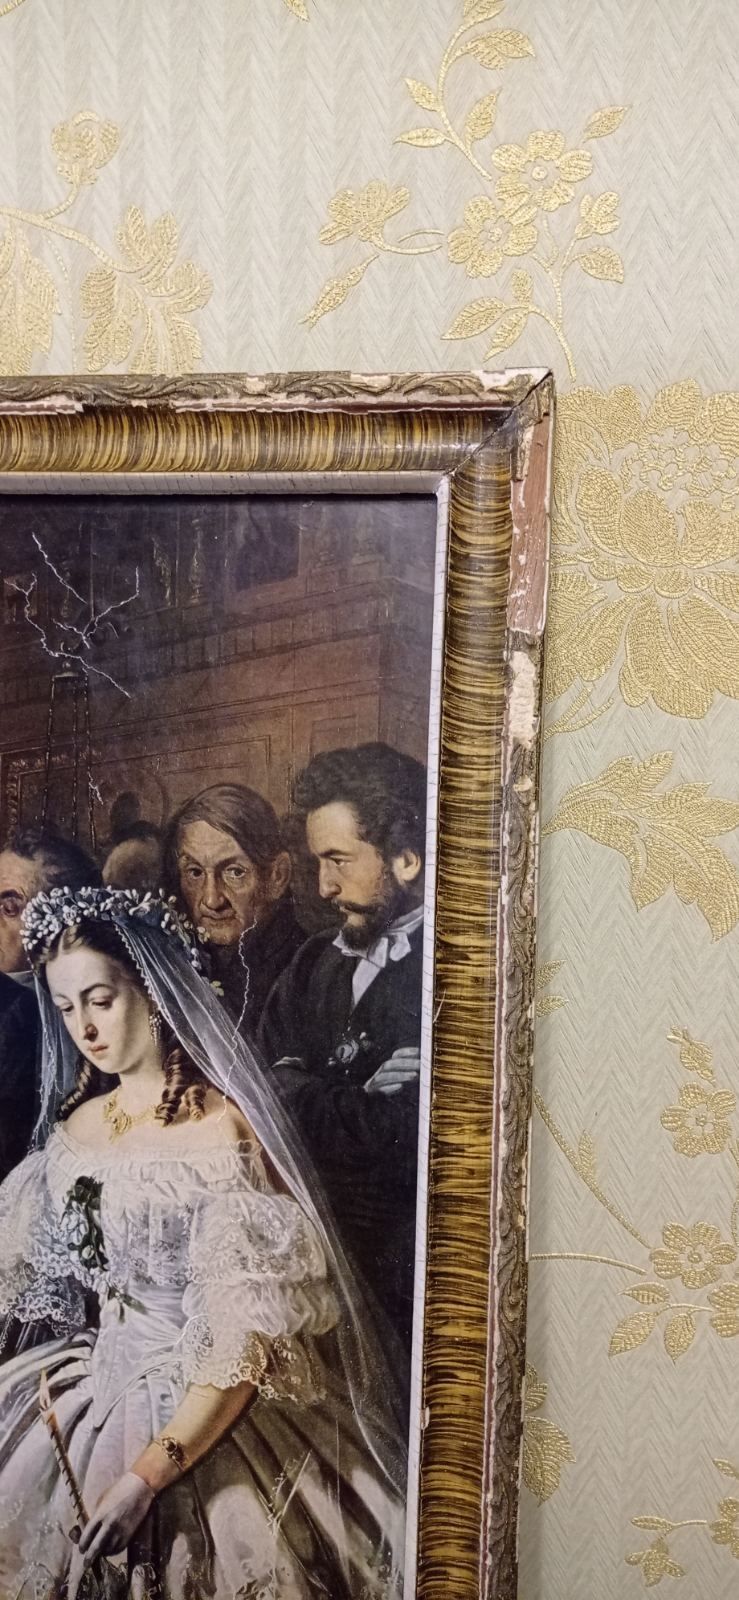 Продам репродукцию картины "Неравный брак"